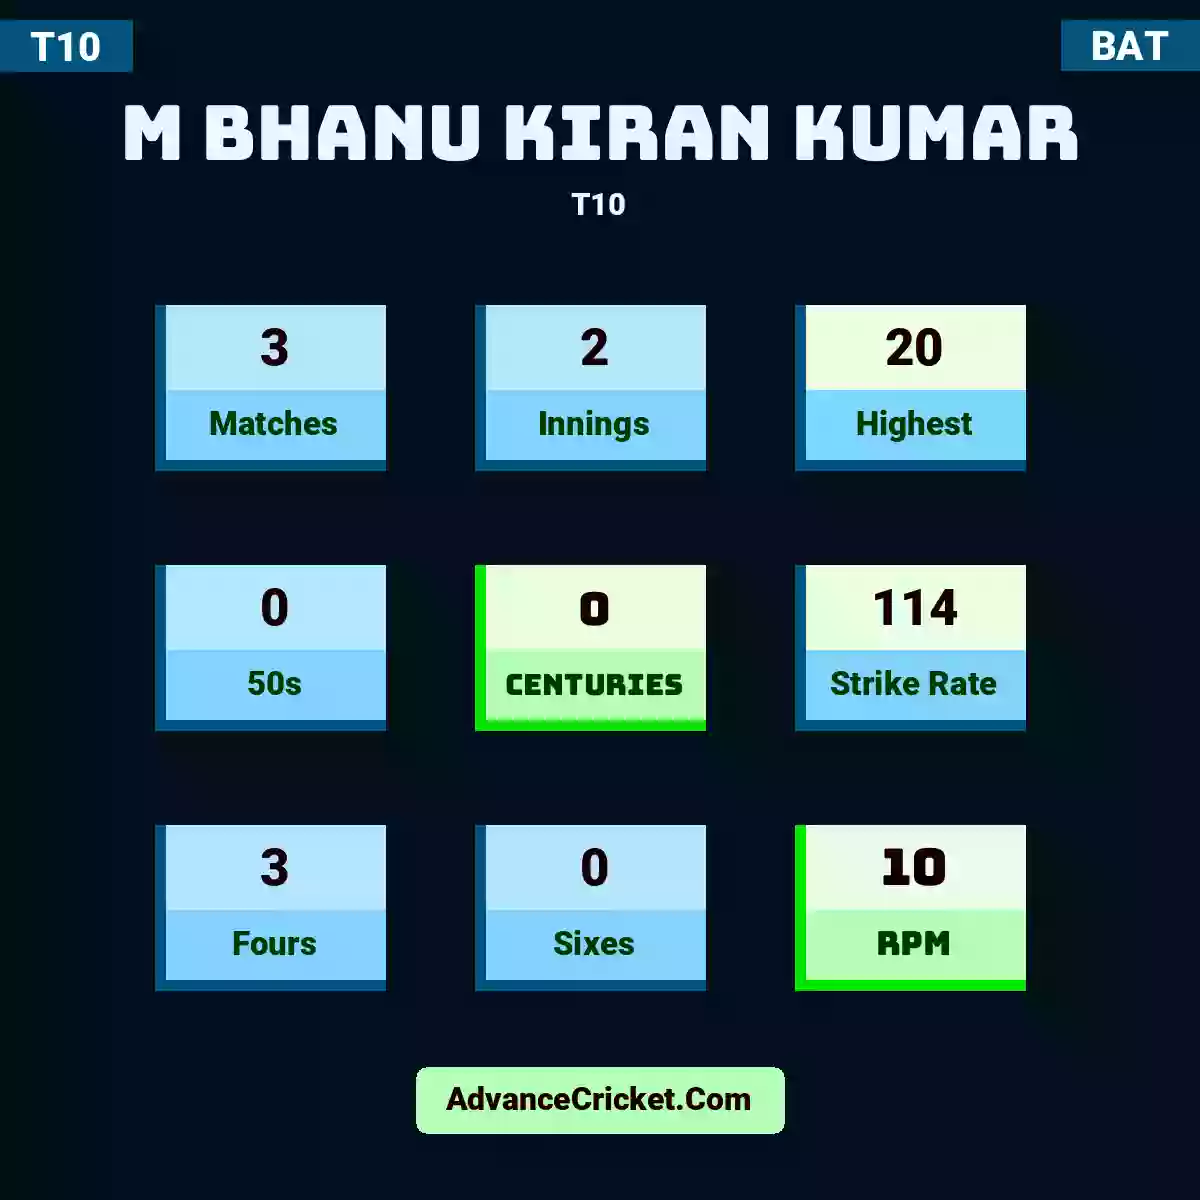 M Bhanu Kiran Kumar T10 , M Bhanu Kiran Kumar played 3 matches, scored 20 runs as highest, 0 half-centuries, and 0 centuries, with a strike rate of 114. M.Bhanu.Kiran.Kumar hit 3 fours and 0 sixes, with an RPM of 10.